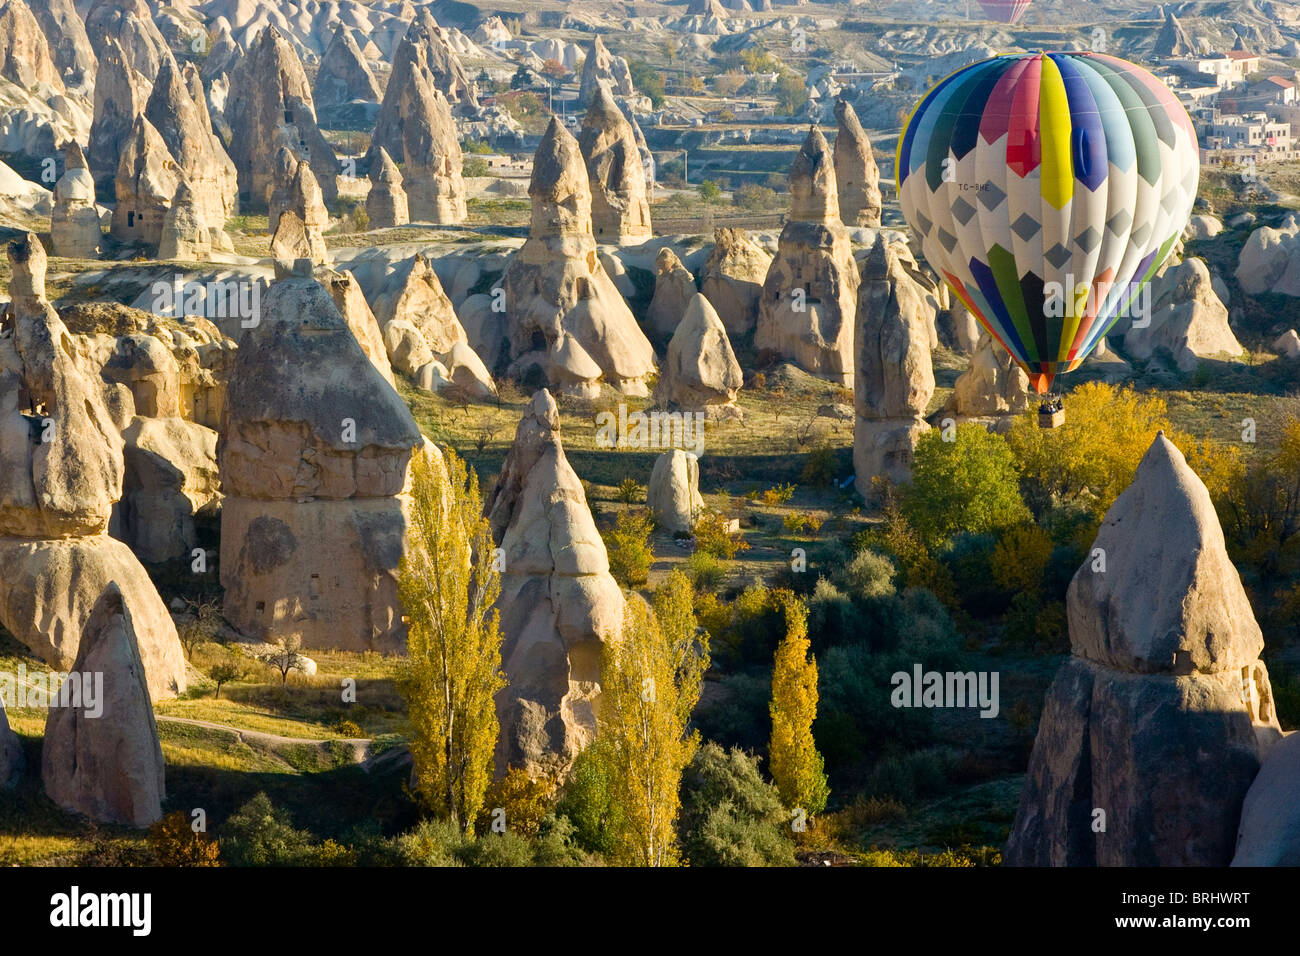 En globo de aire caliente en Capadocia Turquía Foto de stock